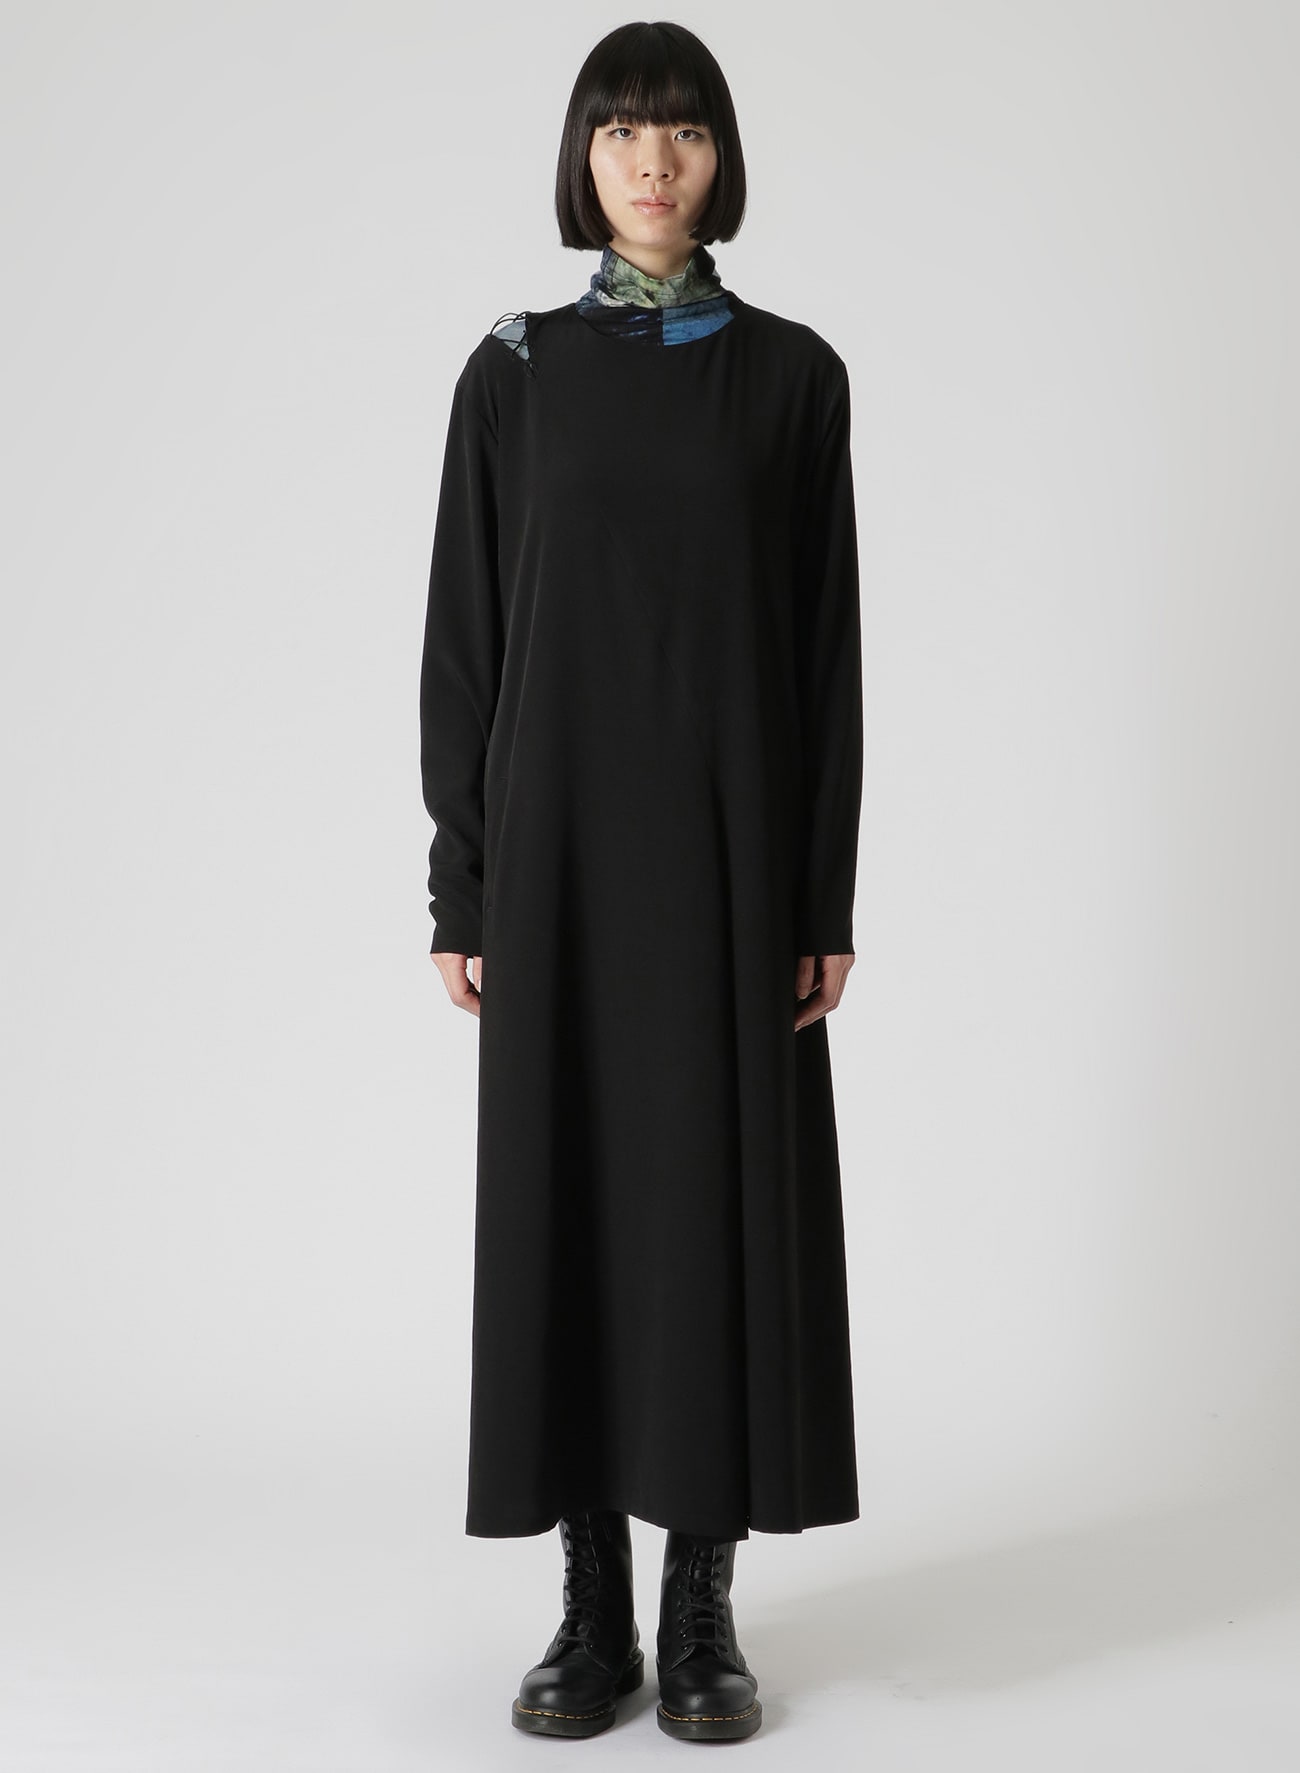 CREPE de CHINE LACE-UP SHOULDER DETAIL DRESS(XS Black): Y's｜THE 